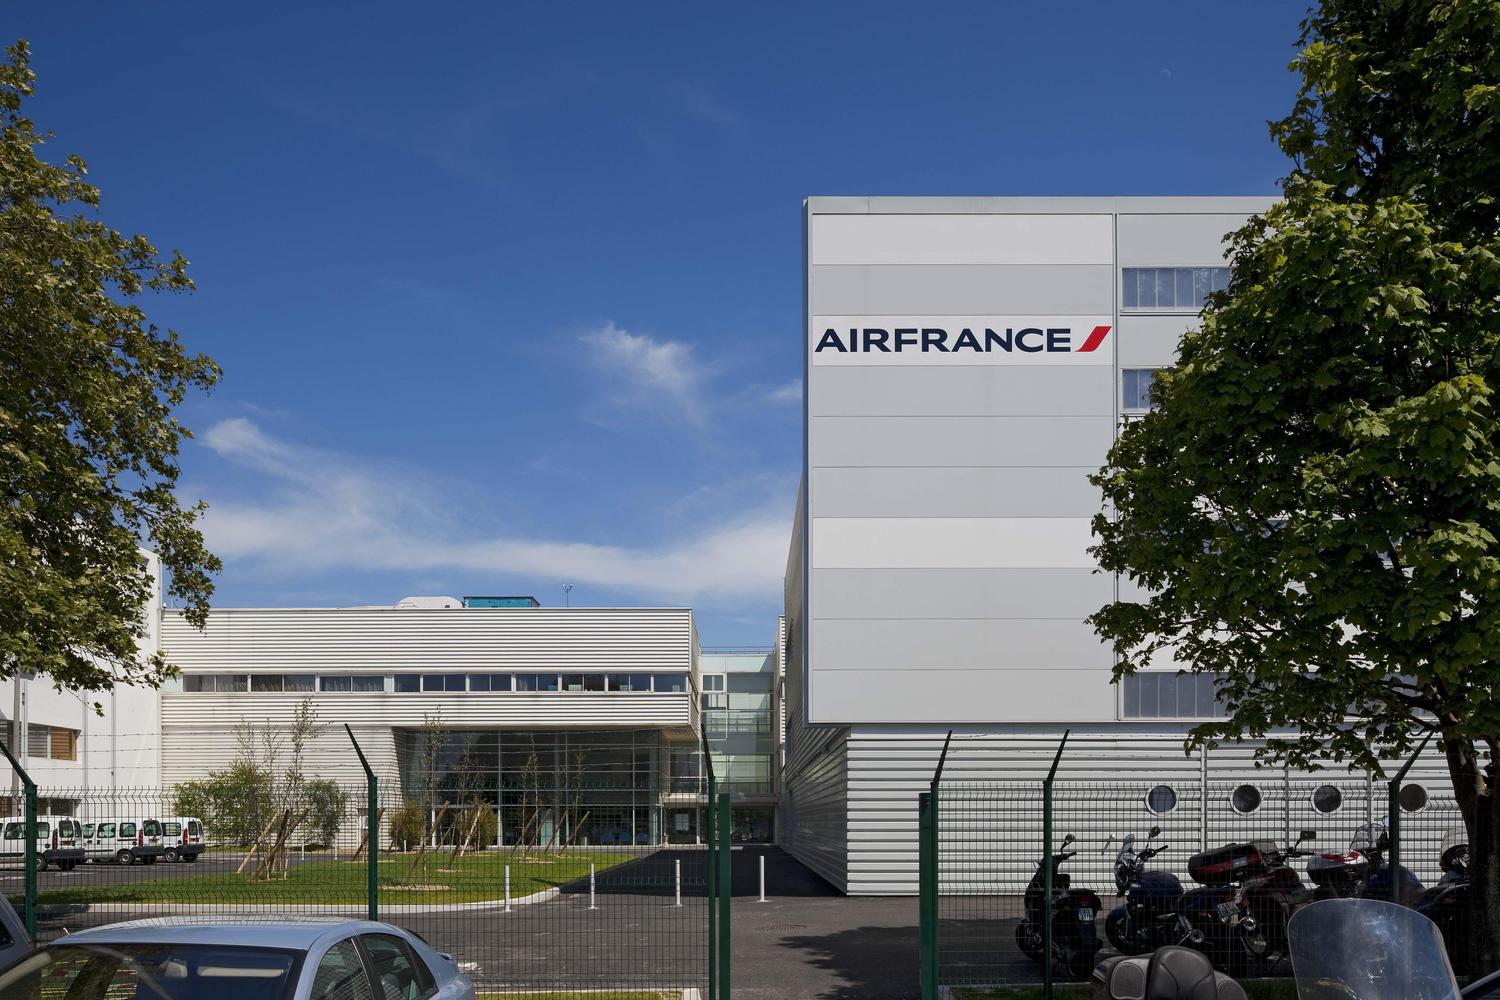 Simulateurs de vol d'Air France - Roissy